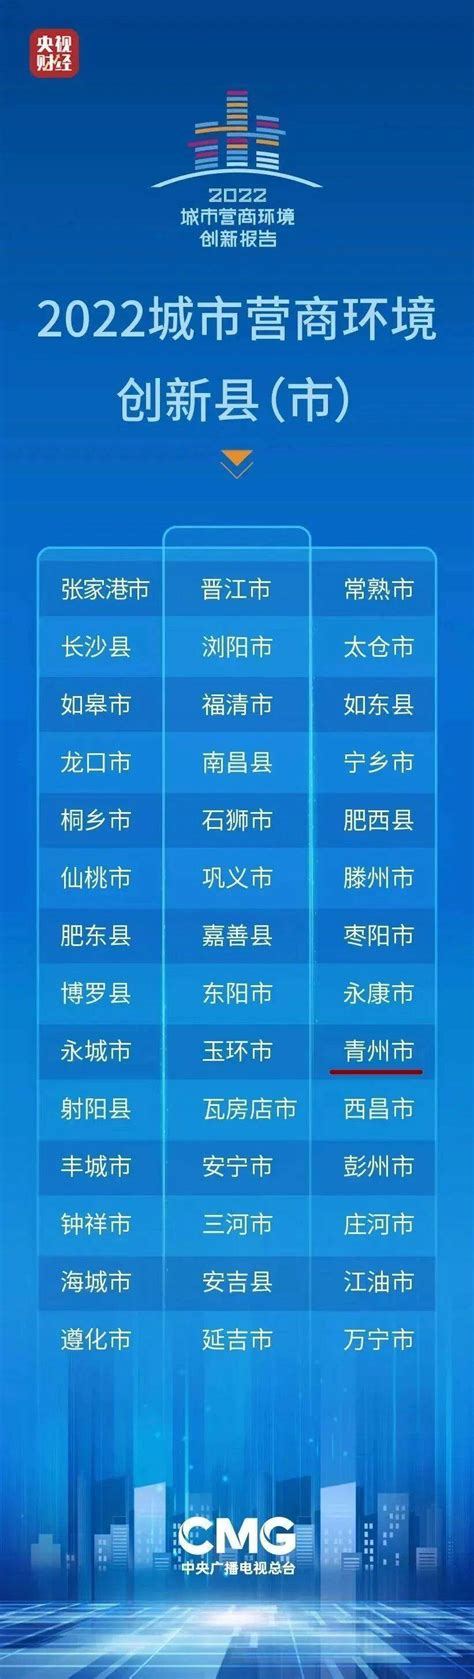 2019中国城市营商环境100强前十排名(3)_巴拉排行榜